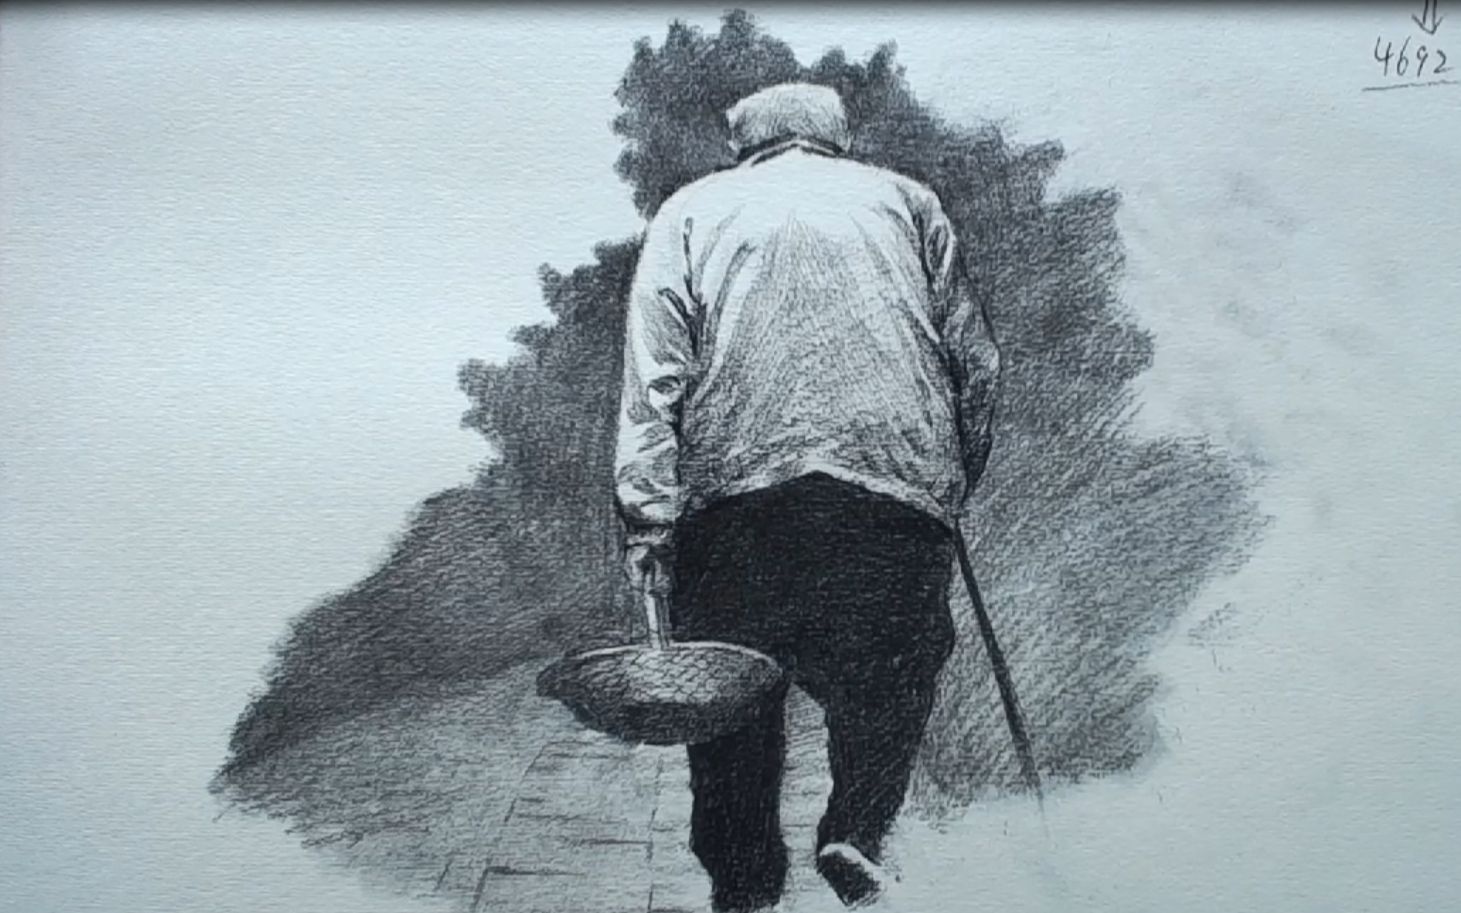 素描教程——你知道老人步履蹒跚的背影怎么表现嘛?